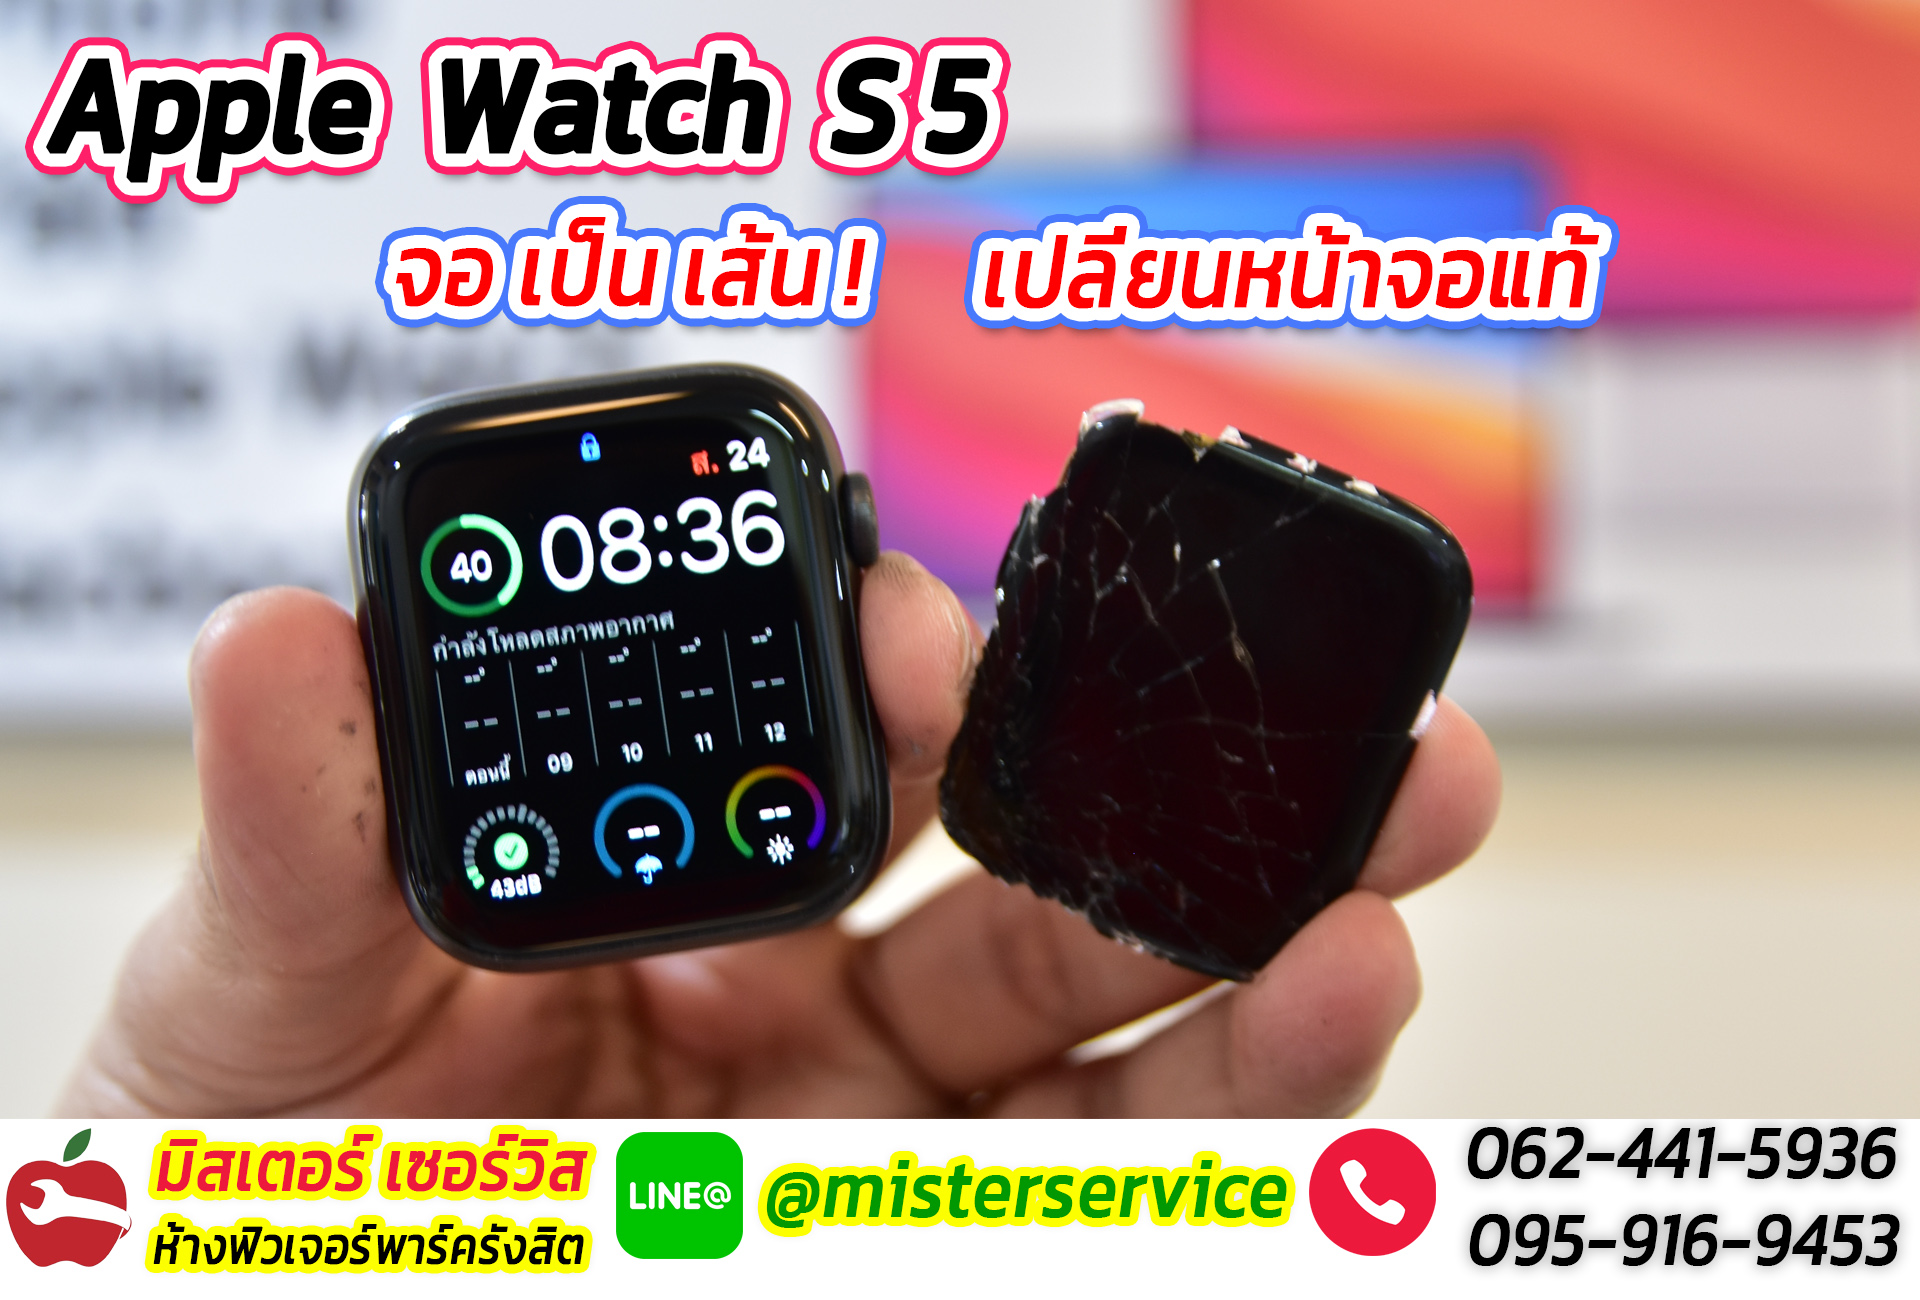 ซ่อม Apple watch รามอินทรา กรุงเทพ